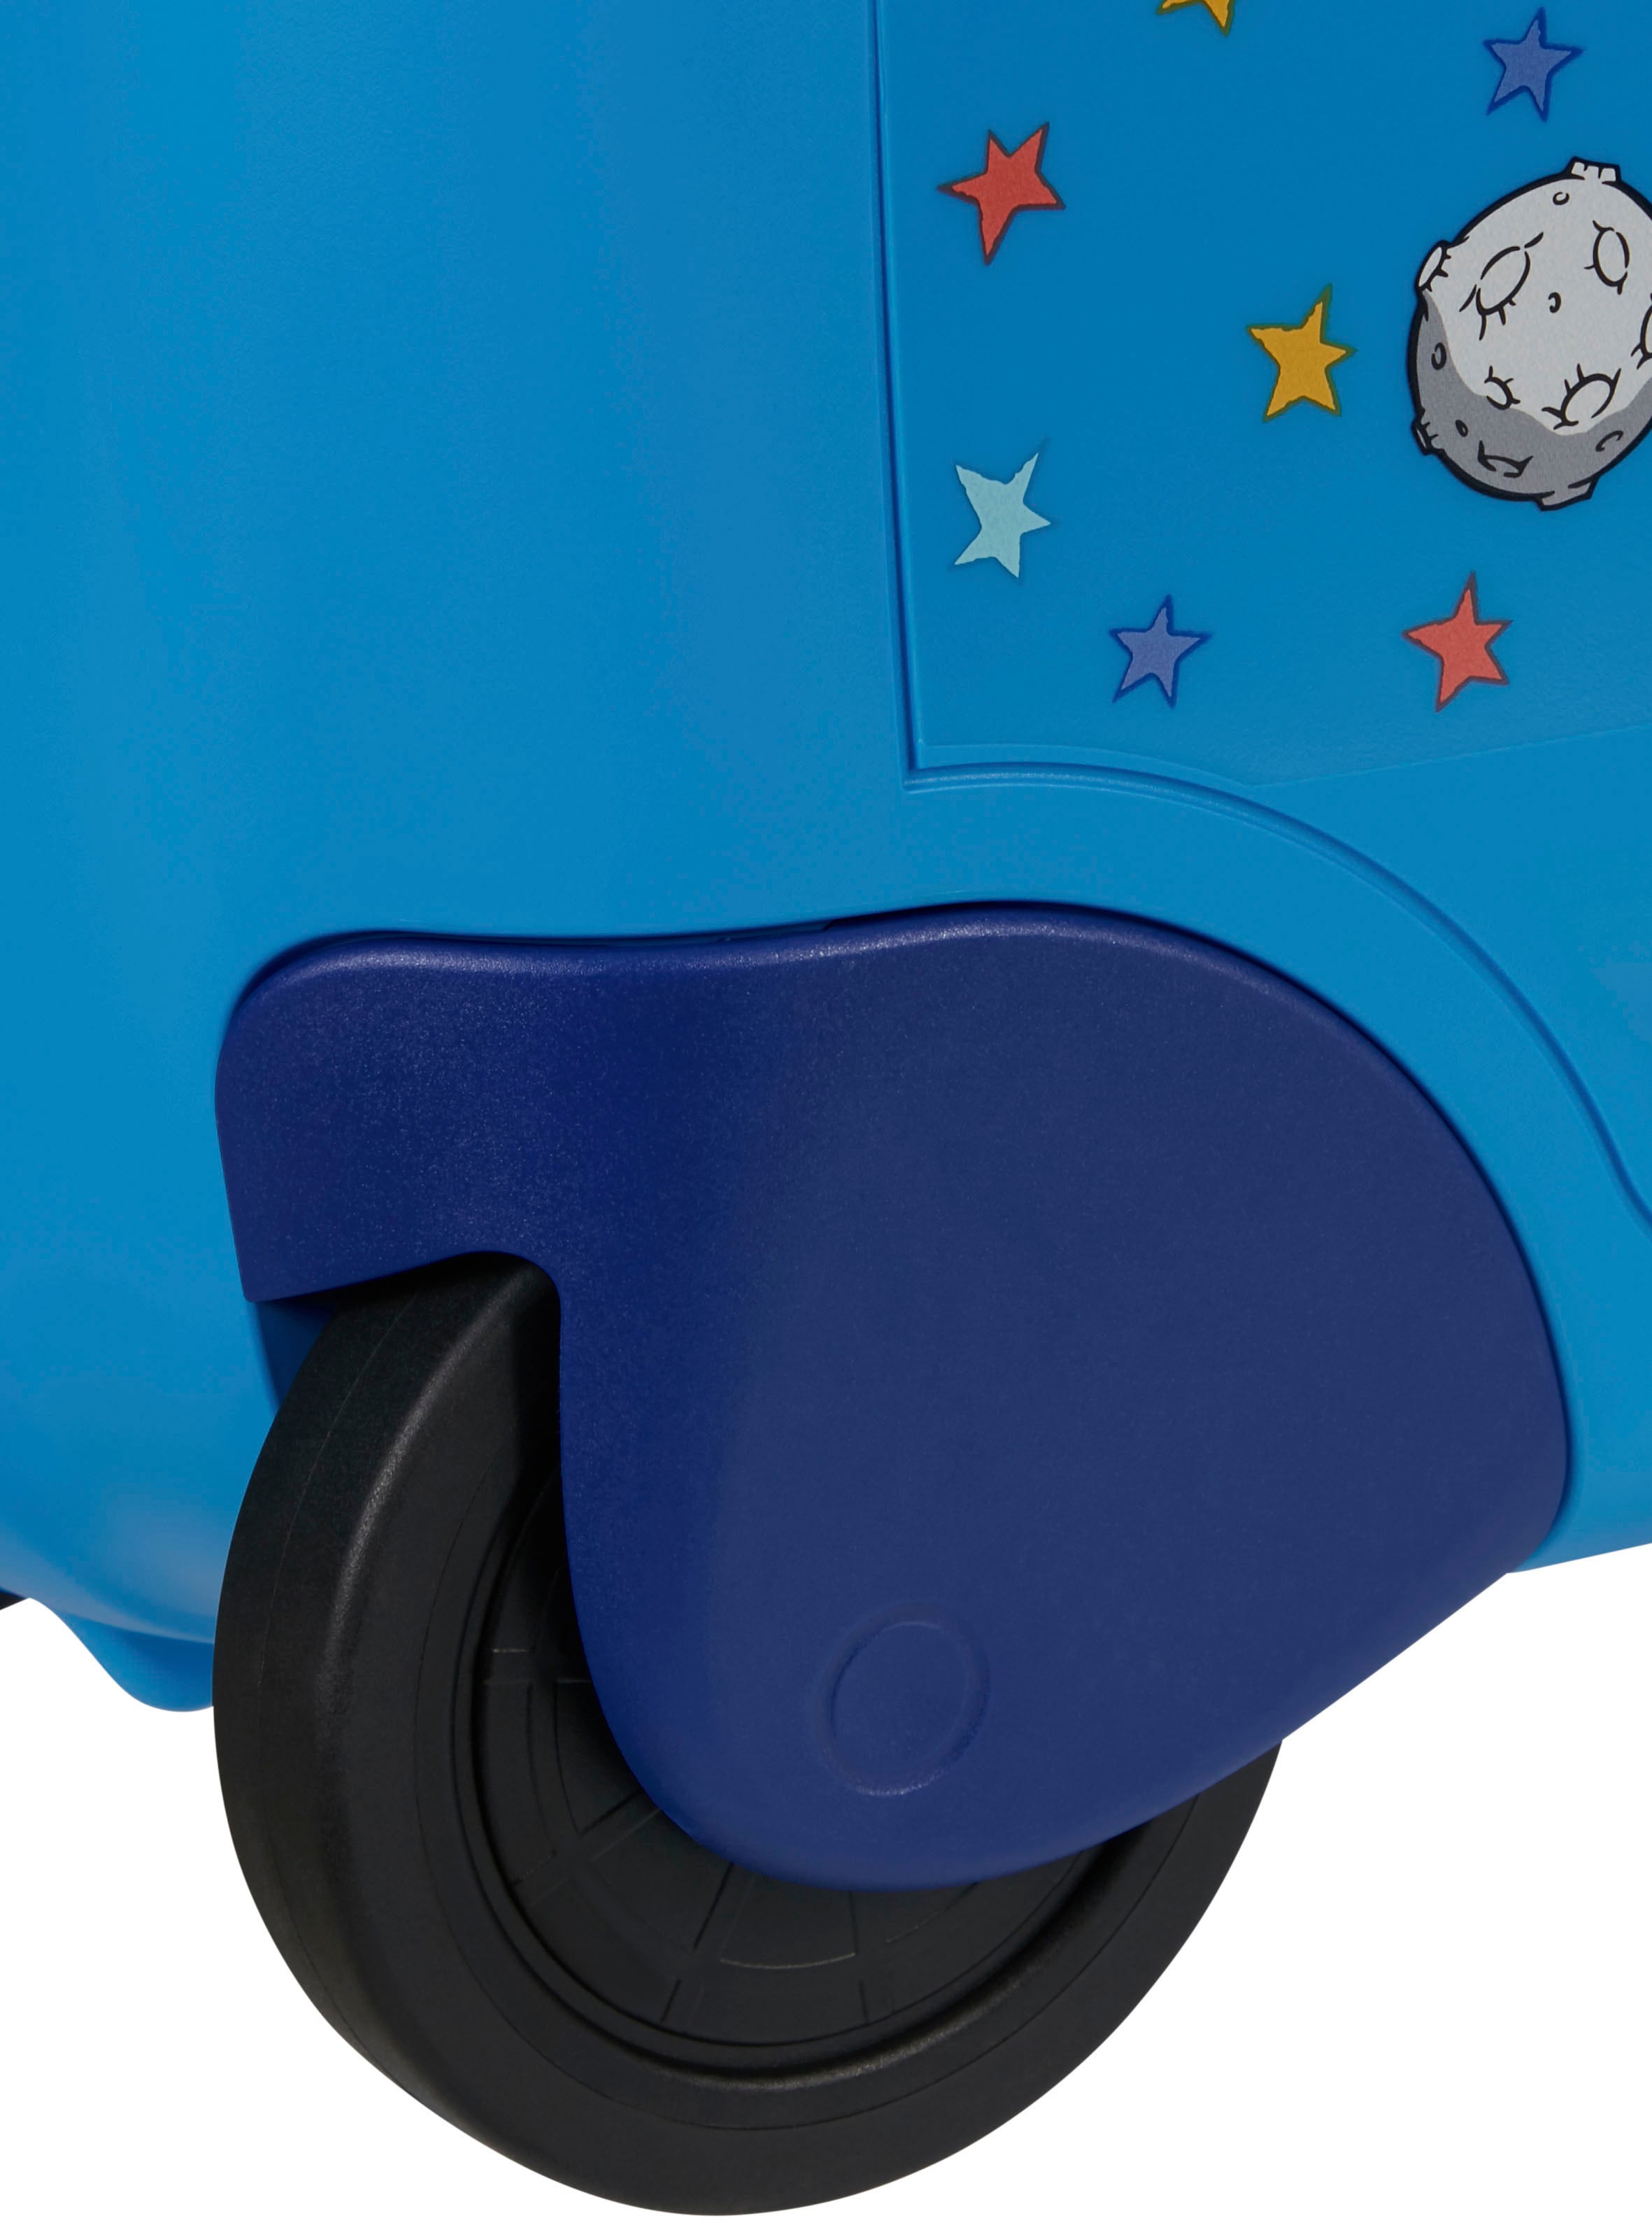 Samsonite Kinderkoffer »Dream2Go Ride-on Trolley, Disney Mickey Stars«, 4 Rollen, zum sitzen und ziehen